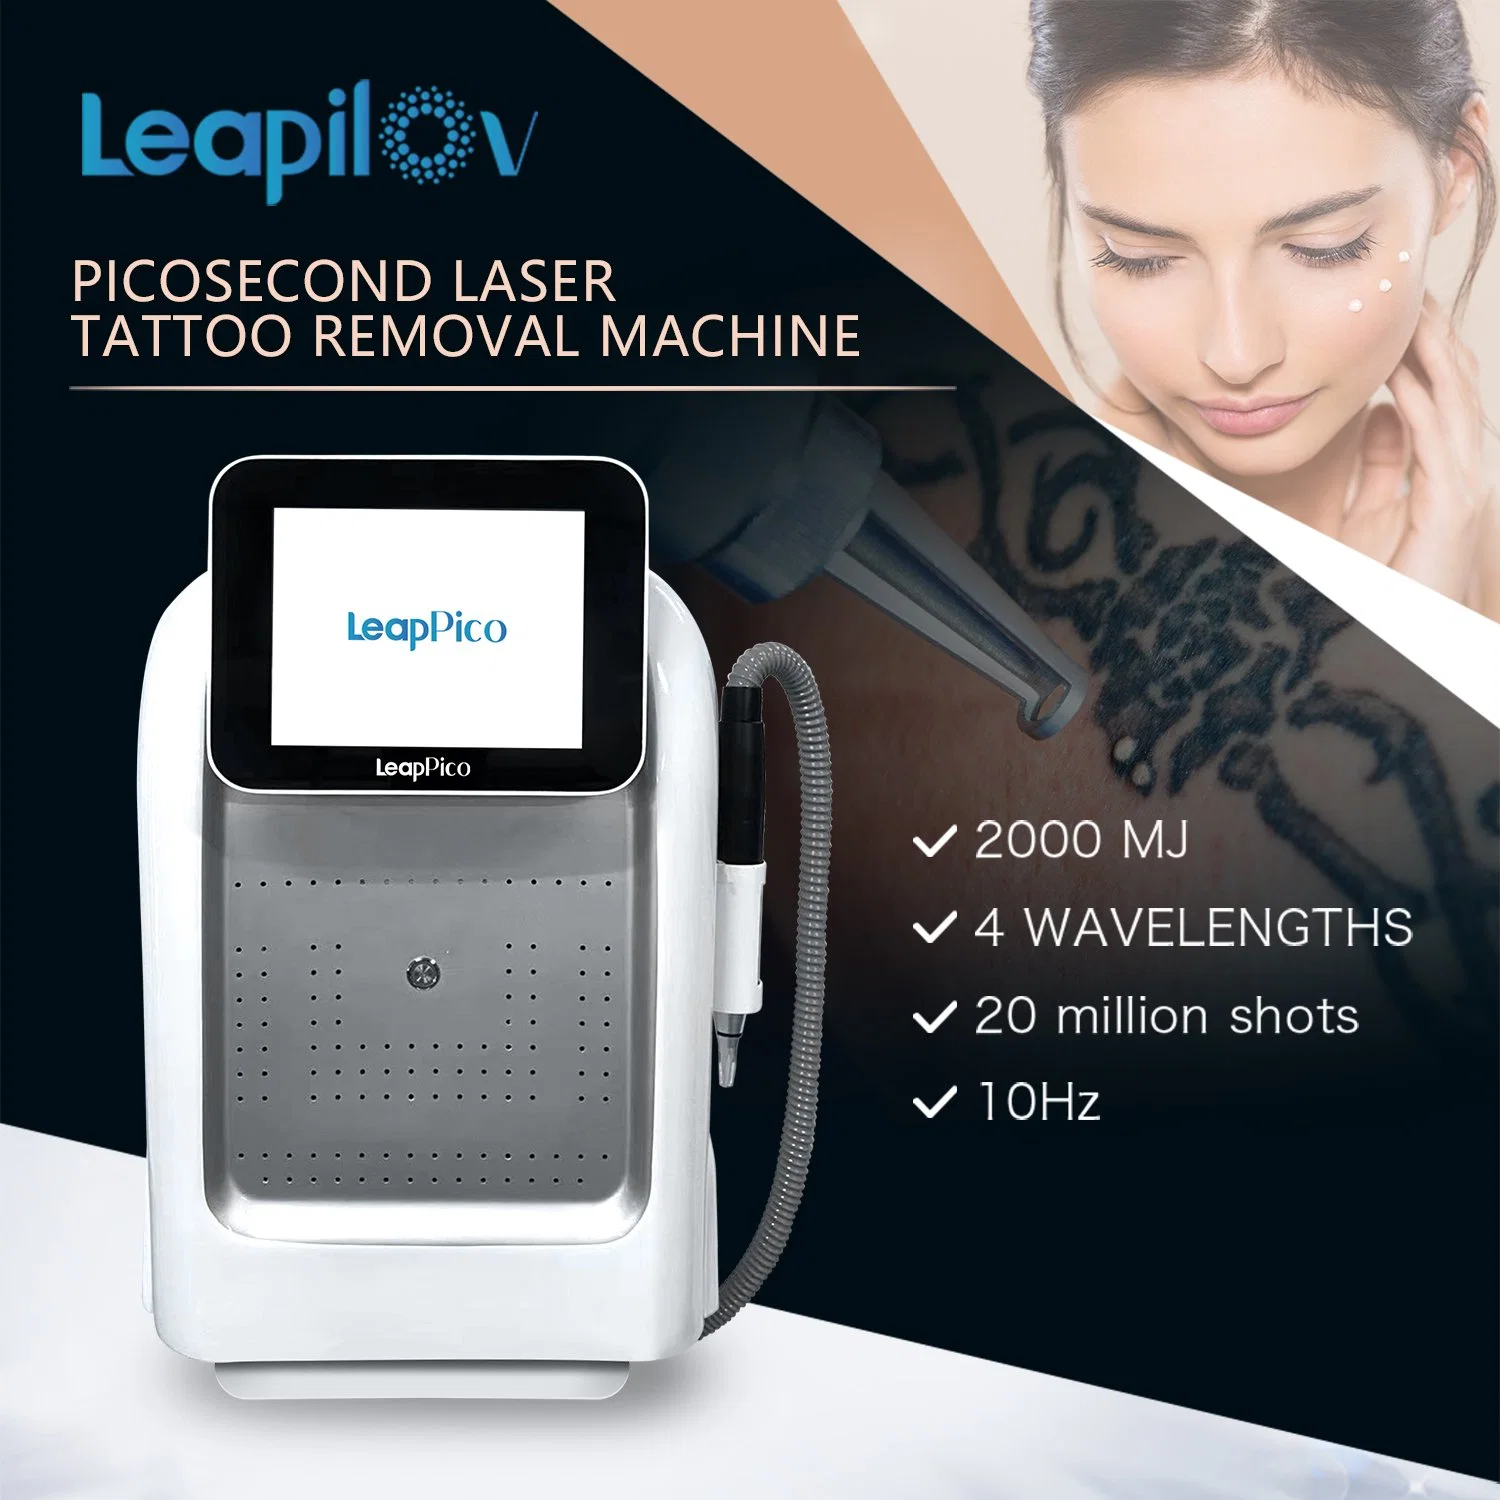 Portable Picosecond Laser / Picolaser / Pico Tattoo Removal Laser Equipment